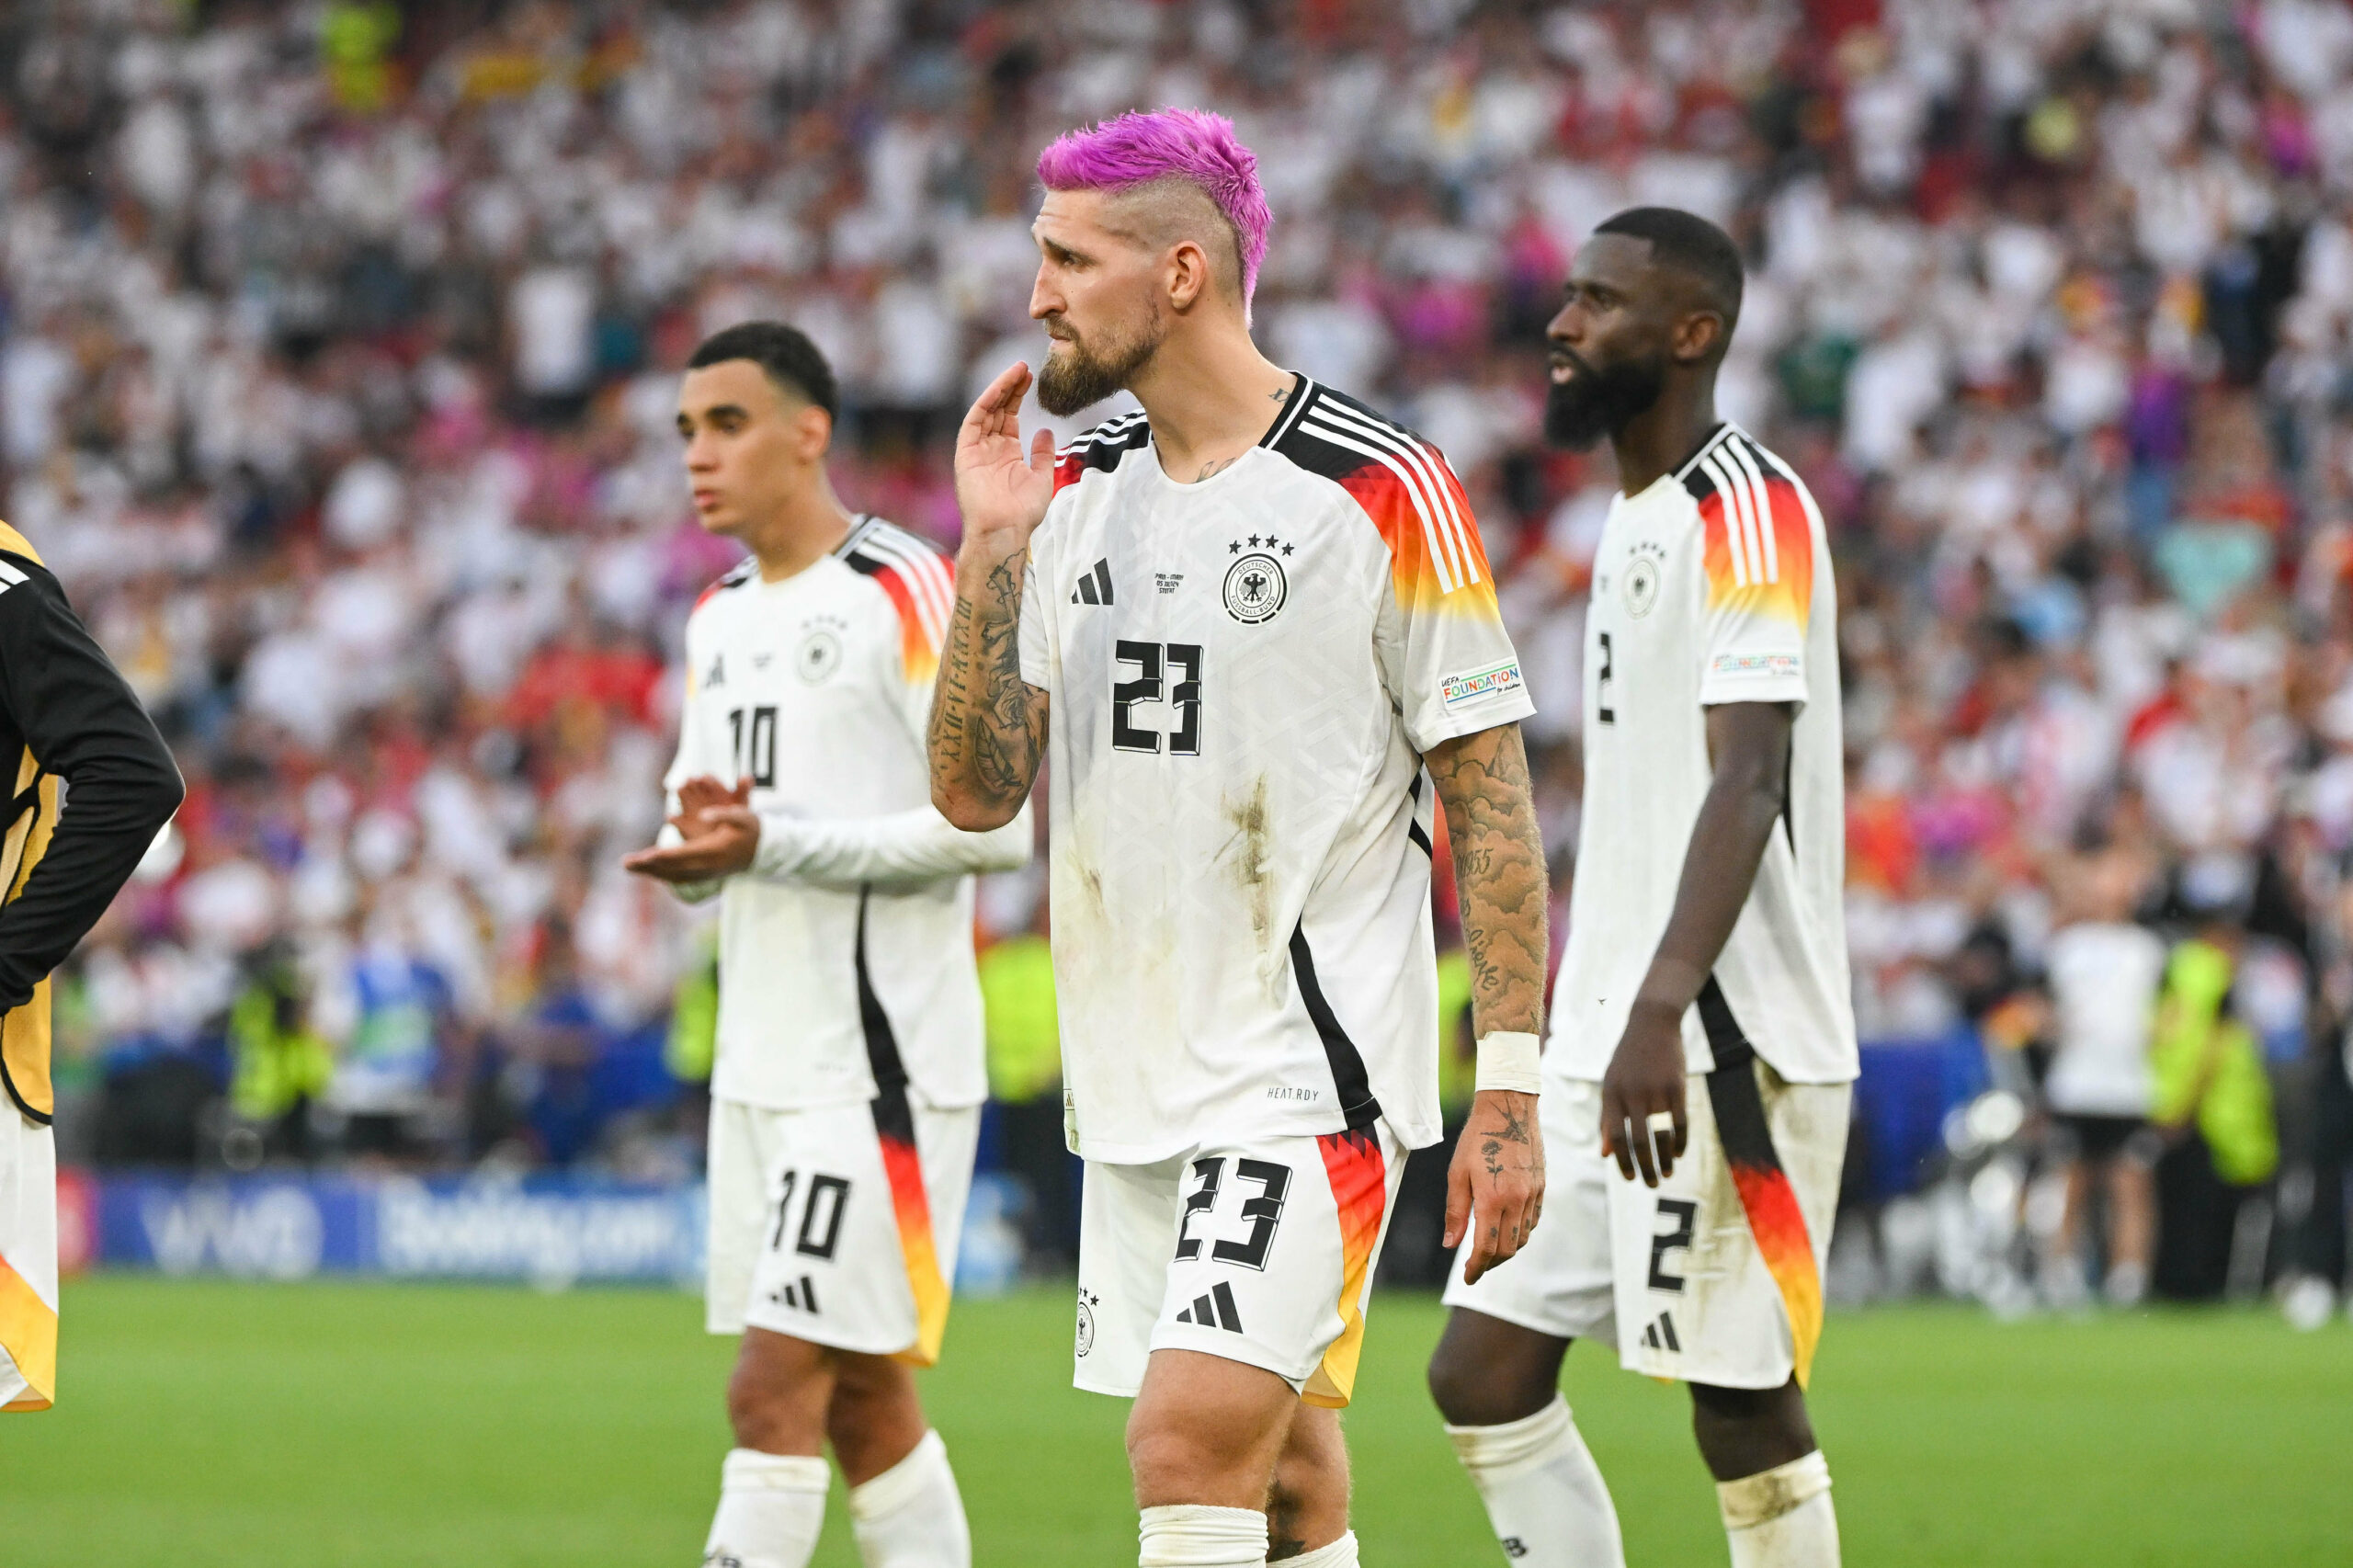 Enttäuscht nach dem Aus gegen Spanien im Viertelfinale: Jamal Musiala, Robert Andrich und Antonio Rüdiger (v.l.)